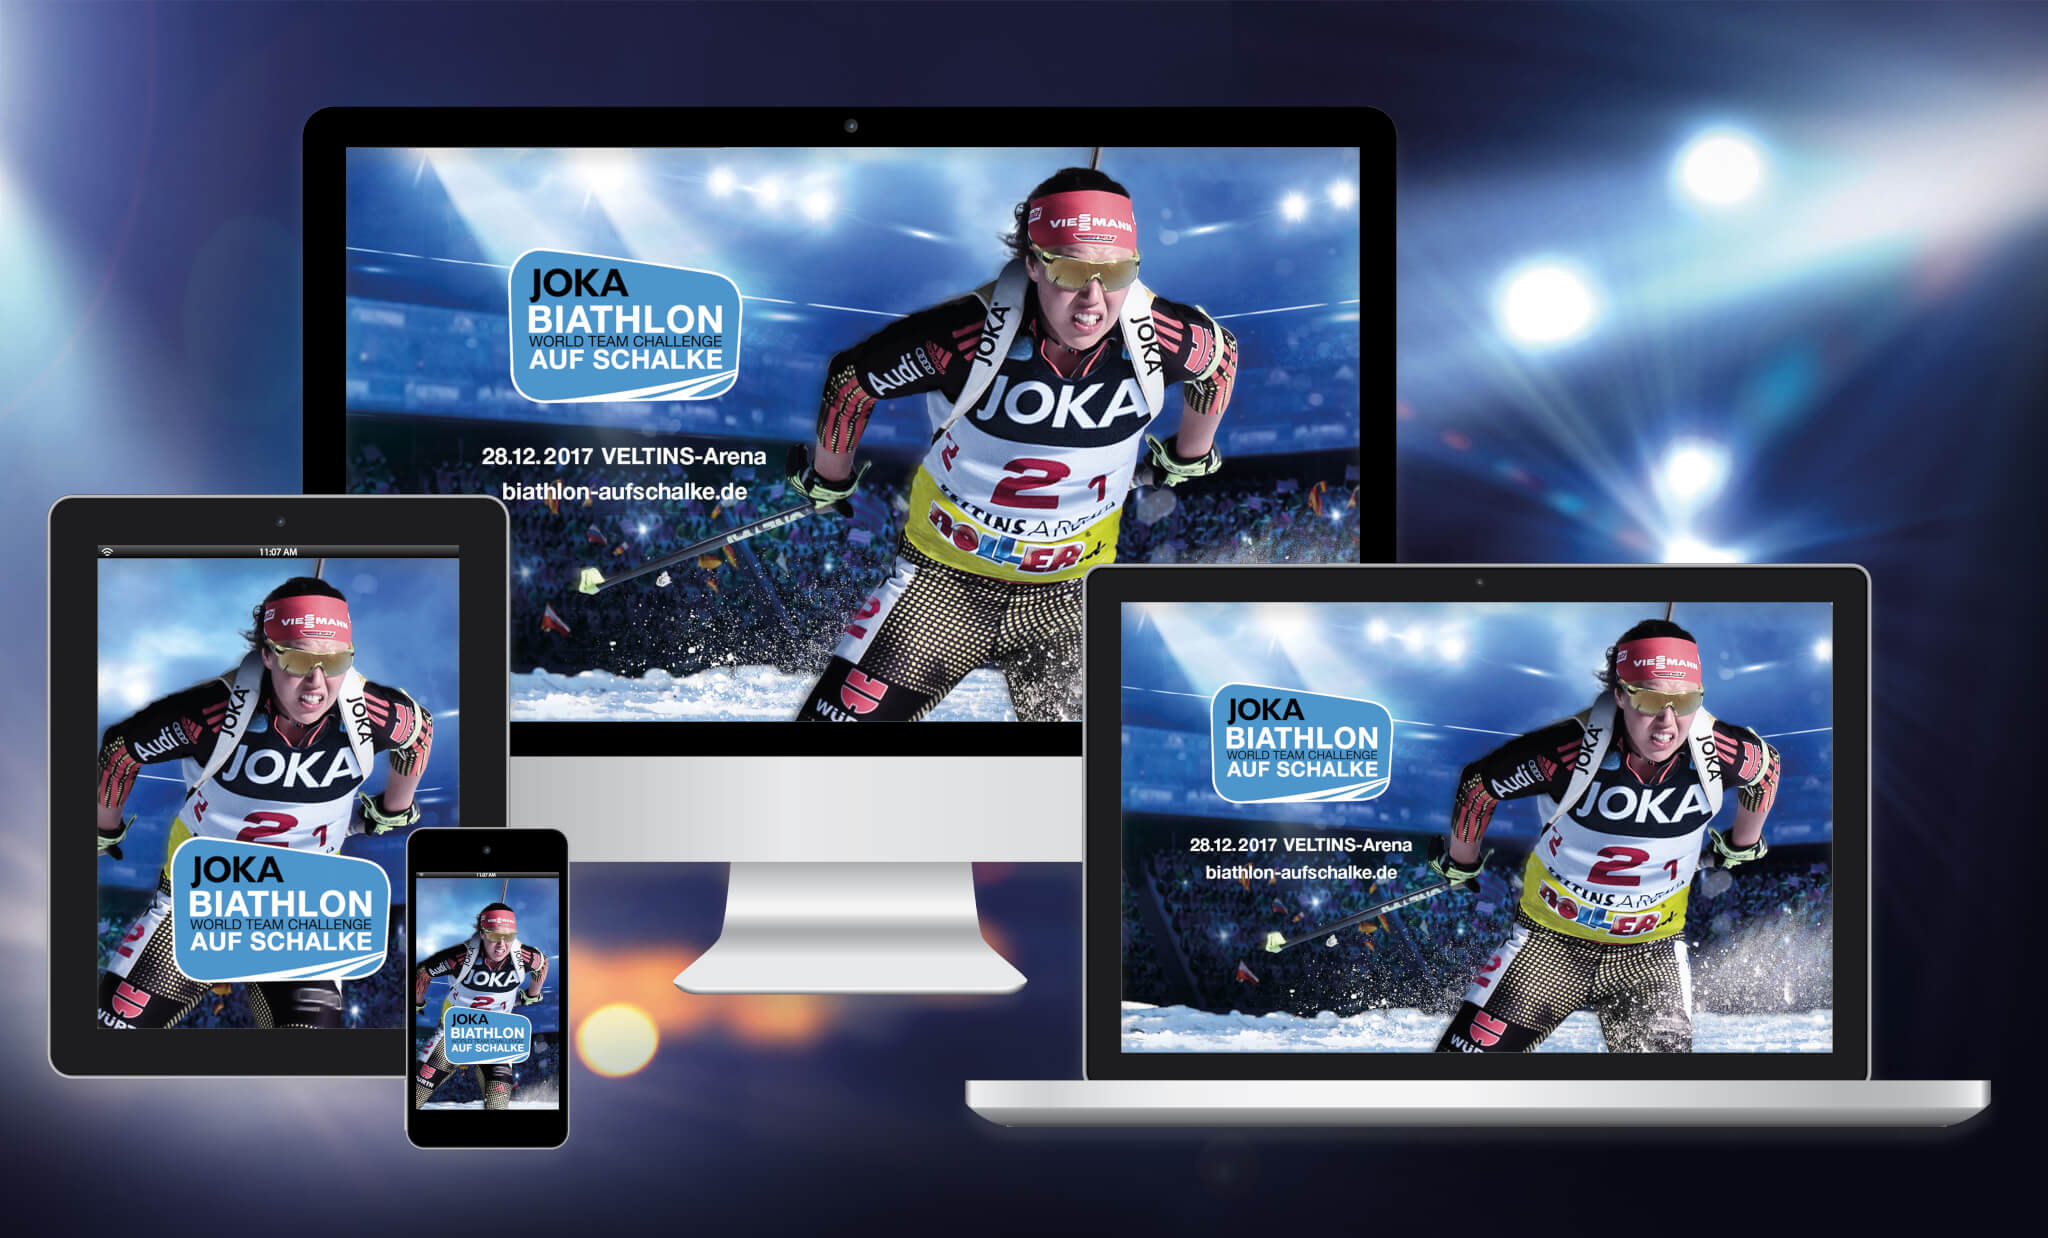 Wallpaper Biathlon Auf Schalke-teilnehmer - Player , HD Wallpaper & Backgrounds